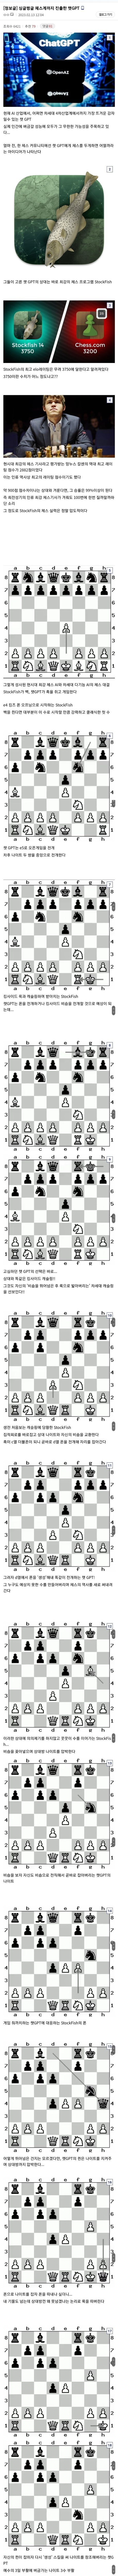 체스계에 진출한 chatGPT.jpg